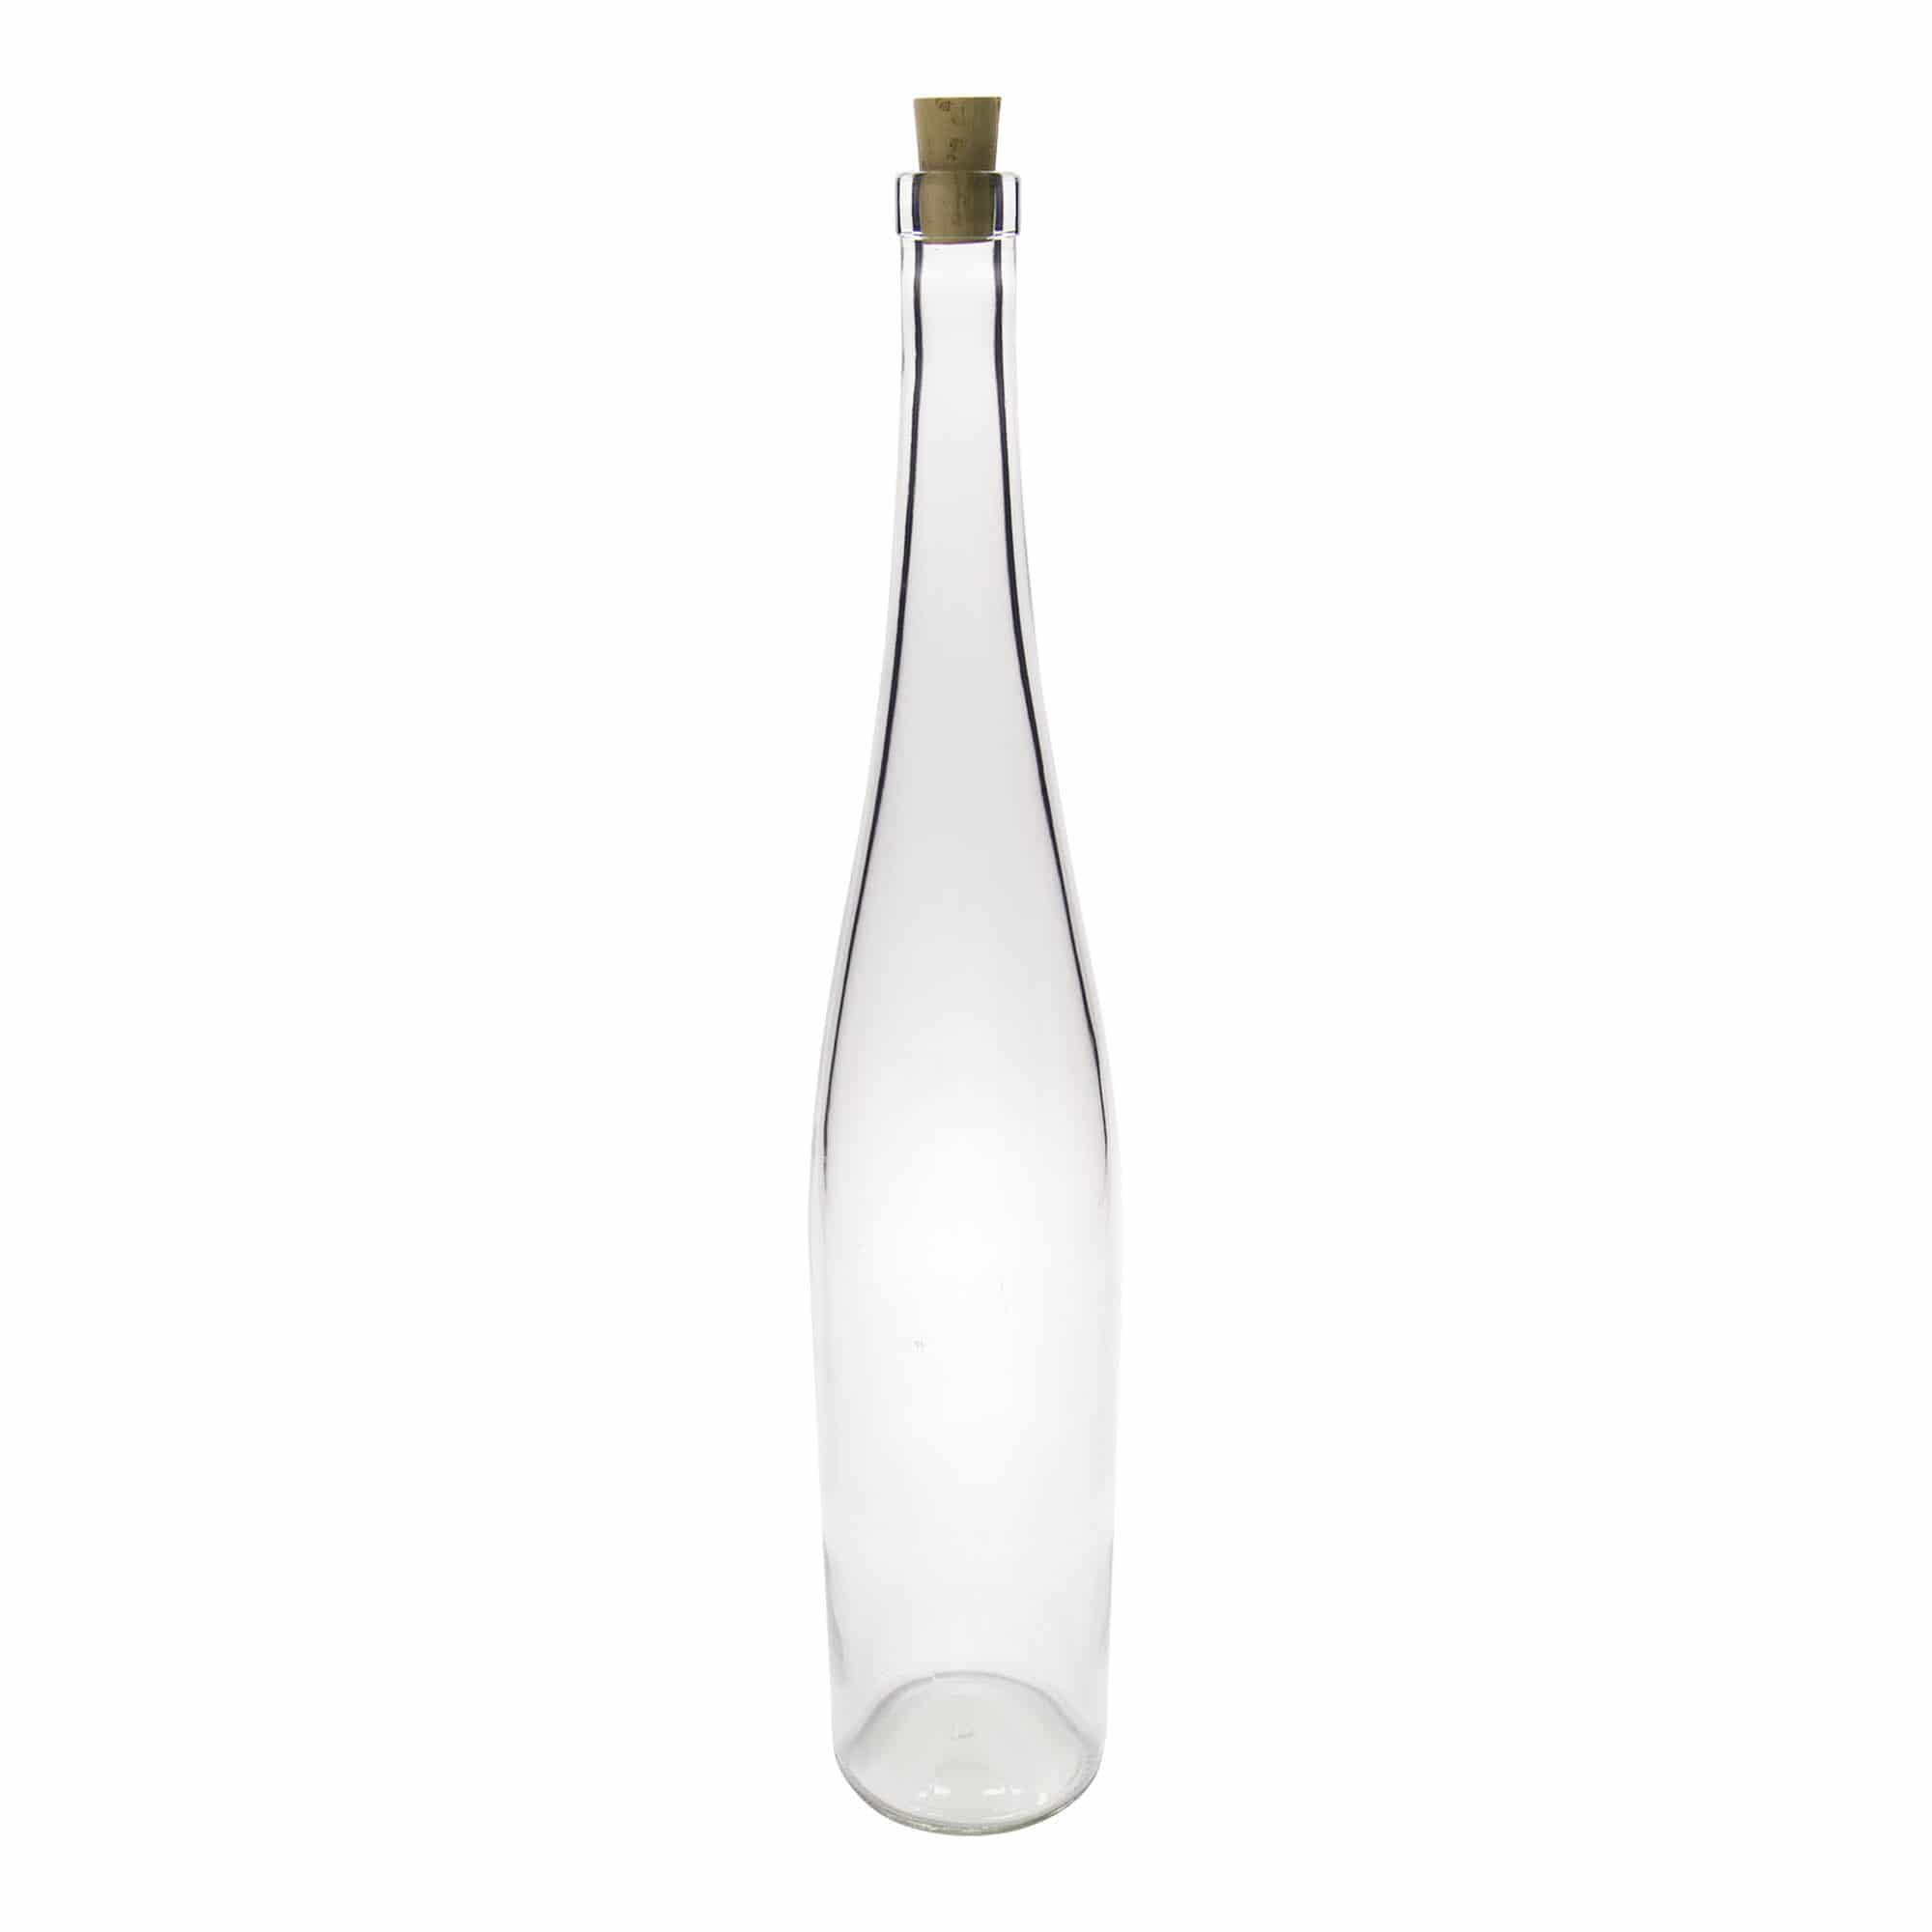 1,500 ml glass bottle 'Weinschlegel', closure: cork